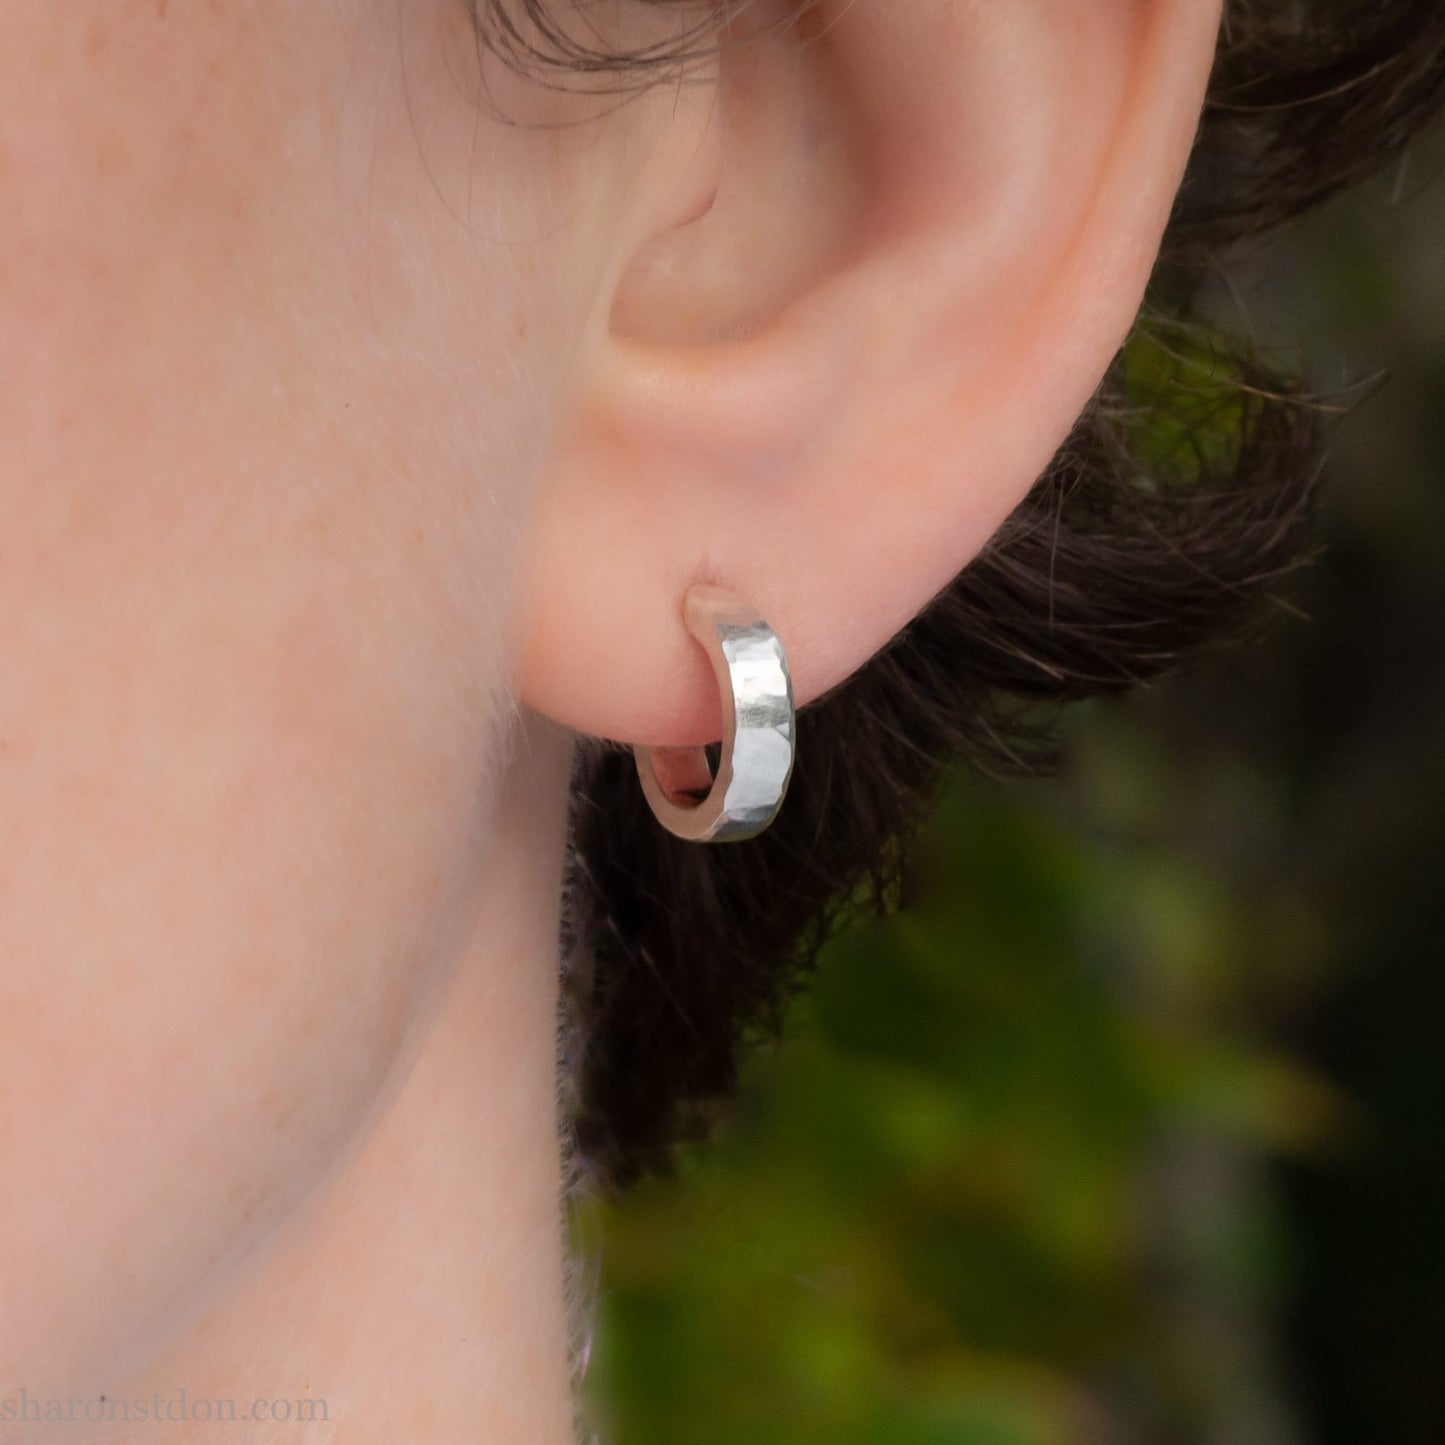 12 x 3mm 925 sterling silver hoop earrings.